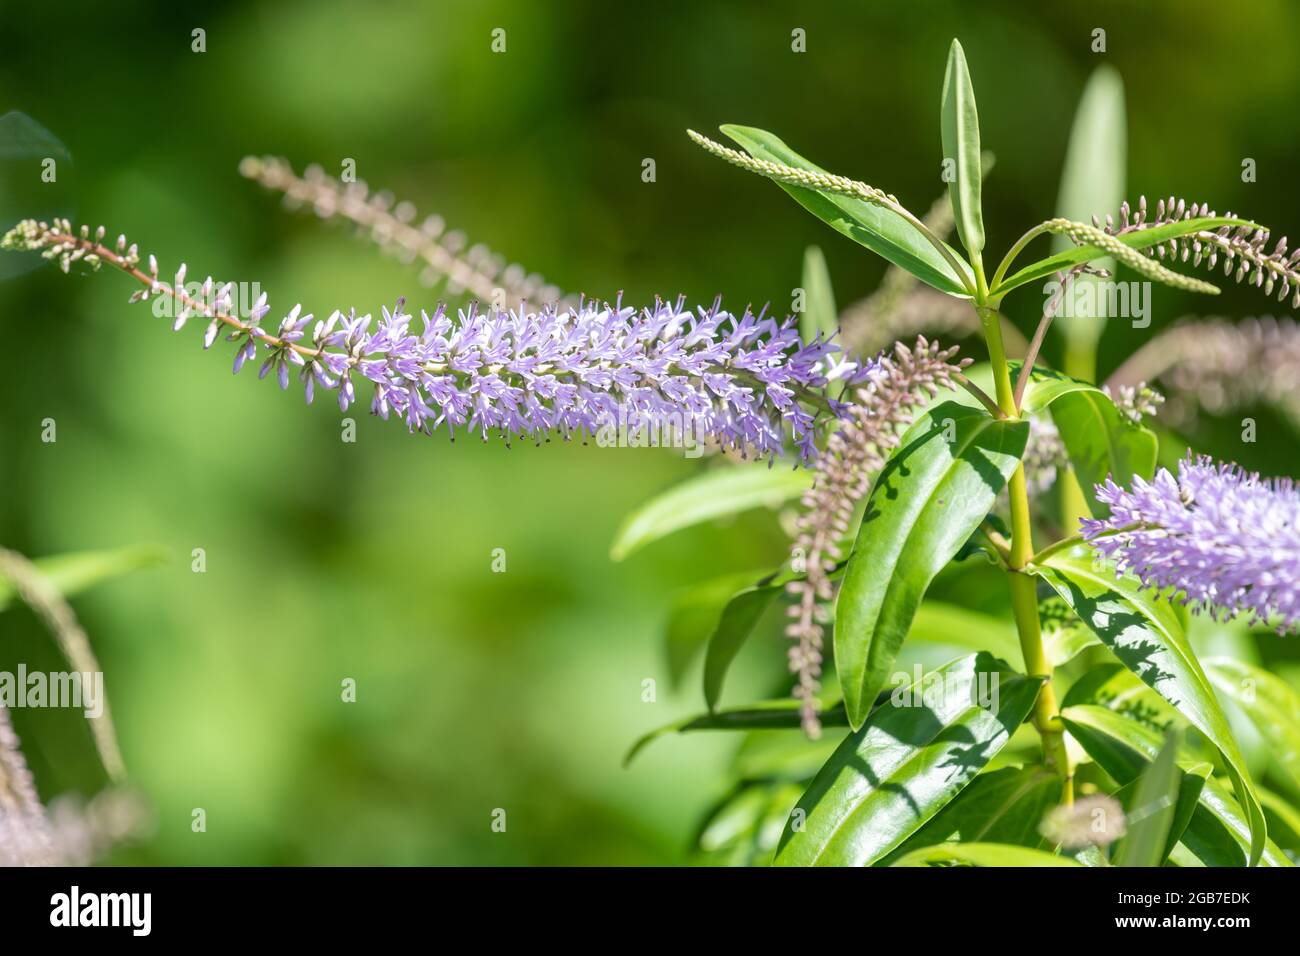 Nahaufnahme von Blumen auf einer Weidenblatt-hebe-Pflanze (veronica  salicifolia Stockfotografie - Alamy